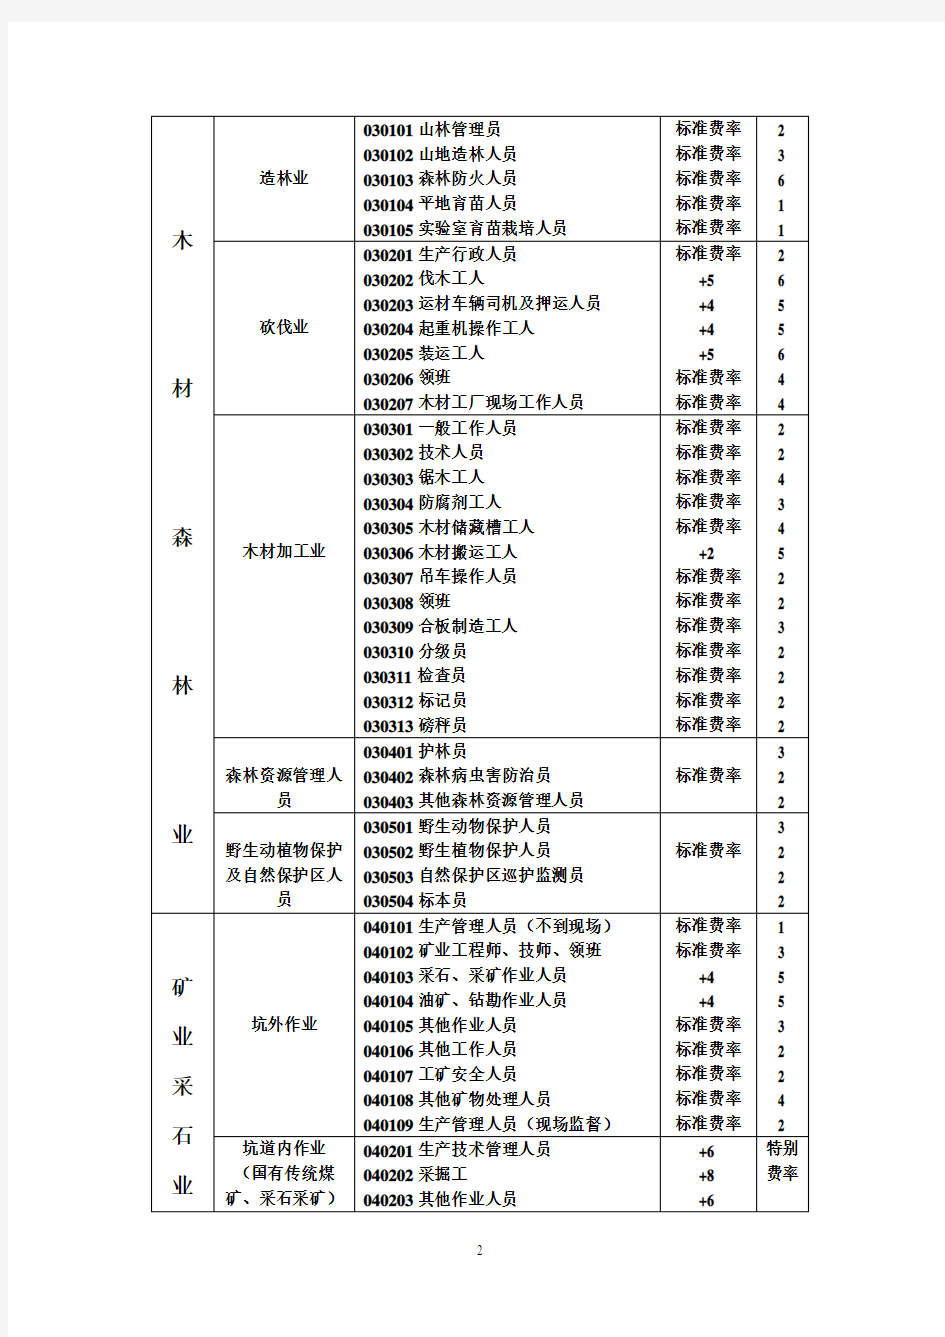 中国人寿职业分类表 - 副本